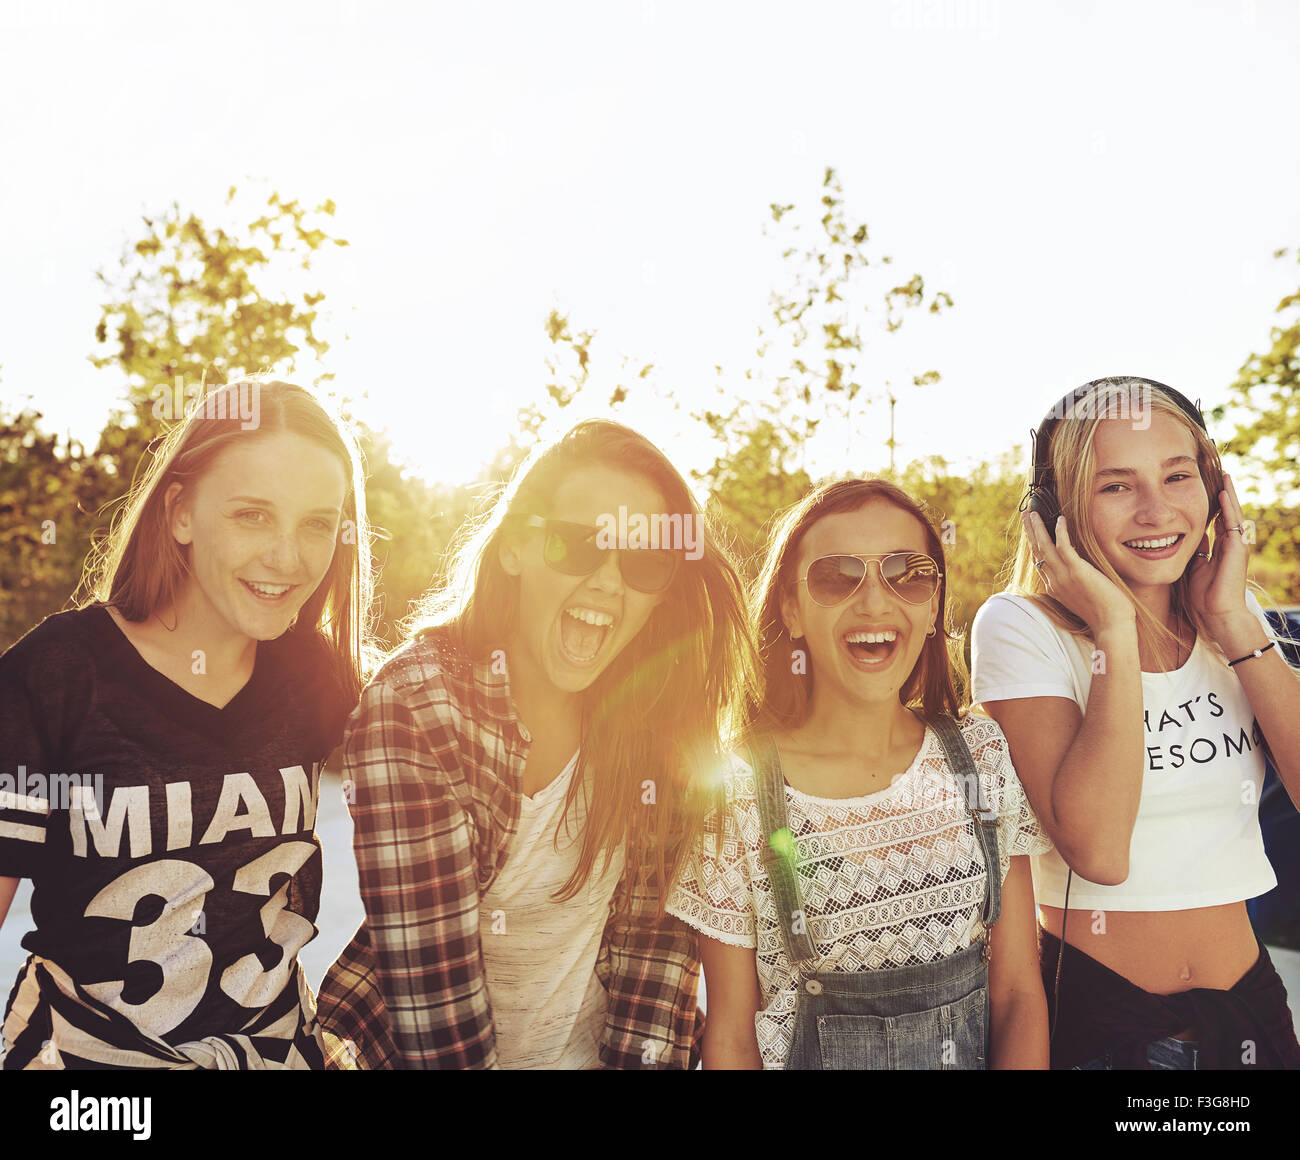 Beste Freunde Lachen Und Viel Spaß An Einem Sommertag Stockfotografie Alamy 